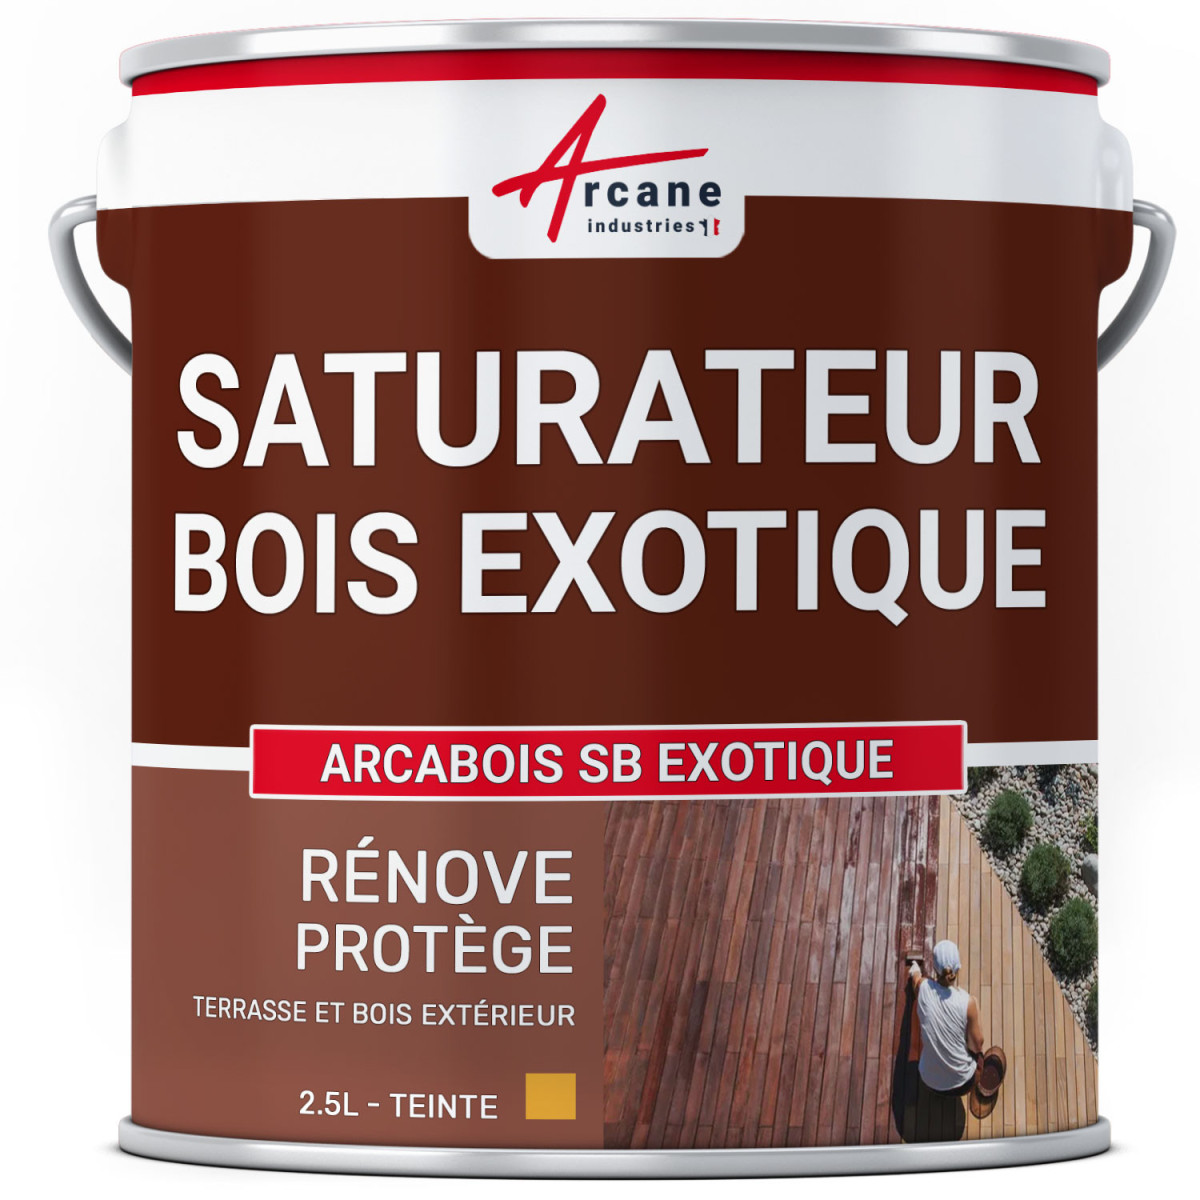 Saturateur Bois Exotique - ARCABOIS SB EXOTIQUE